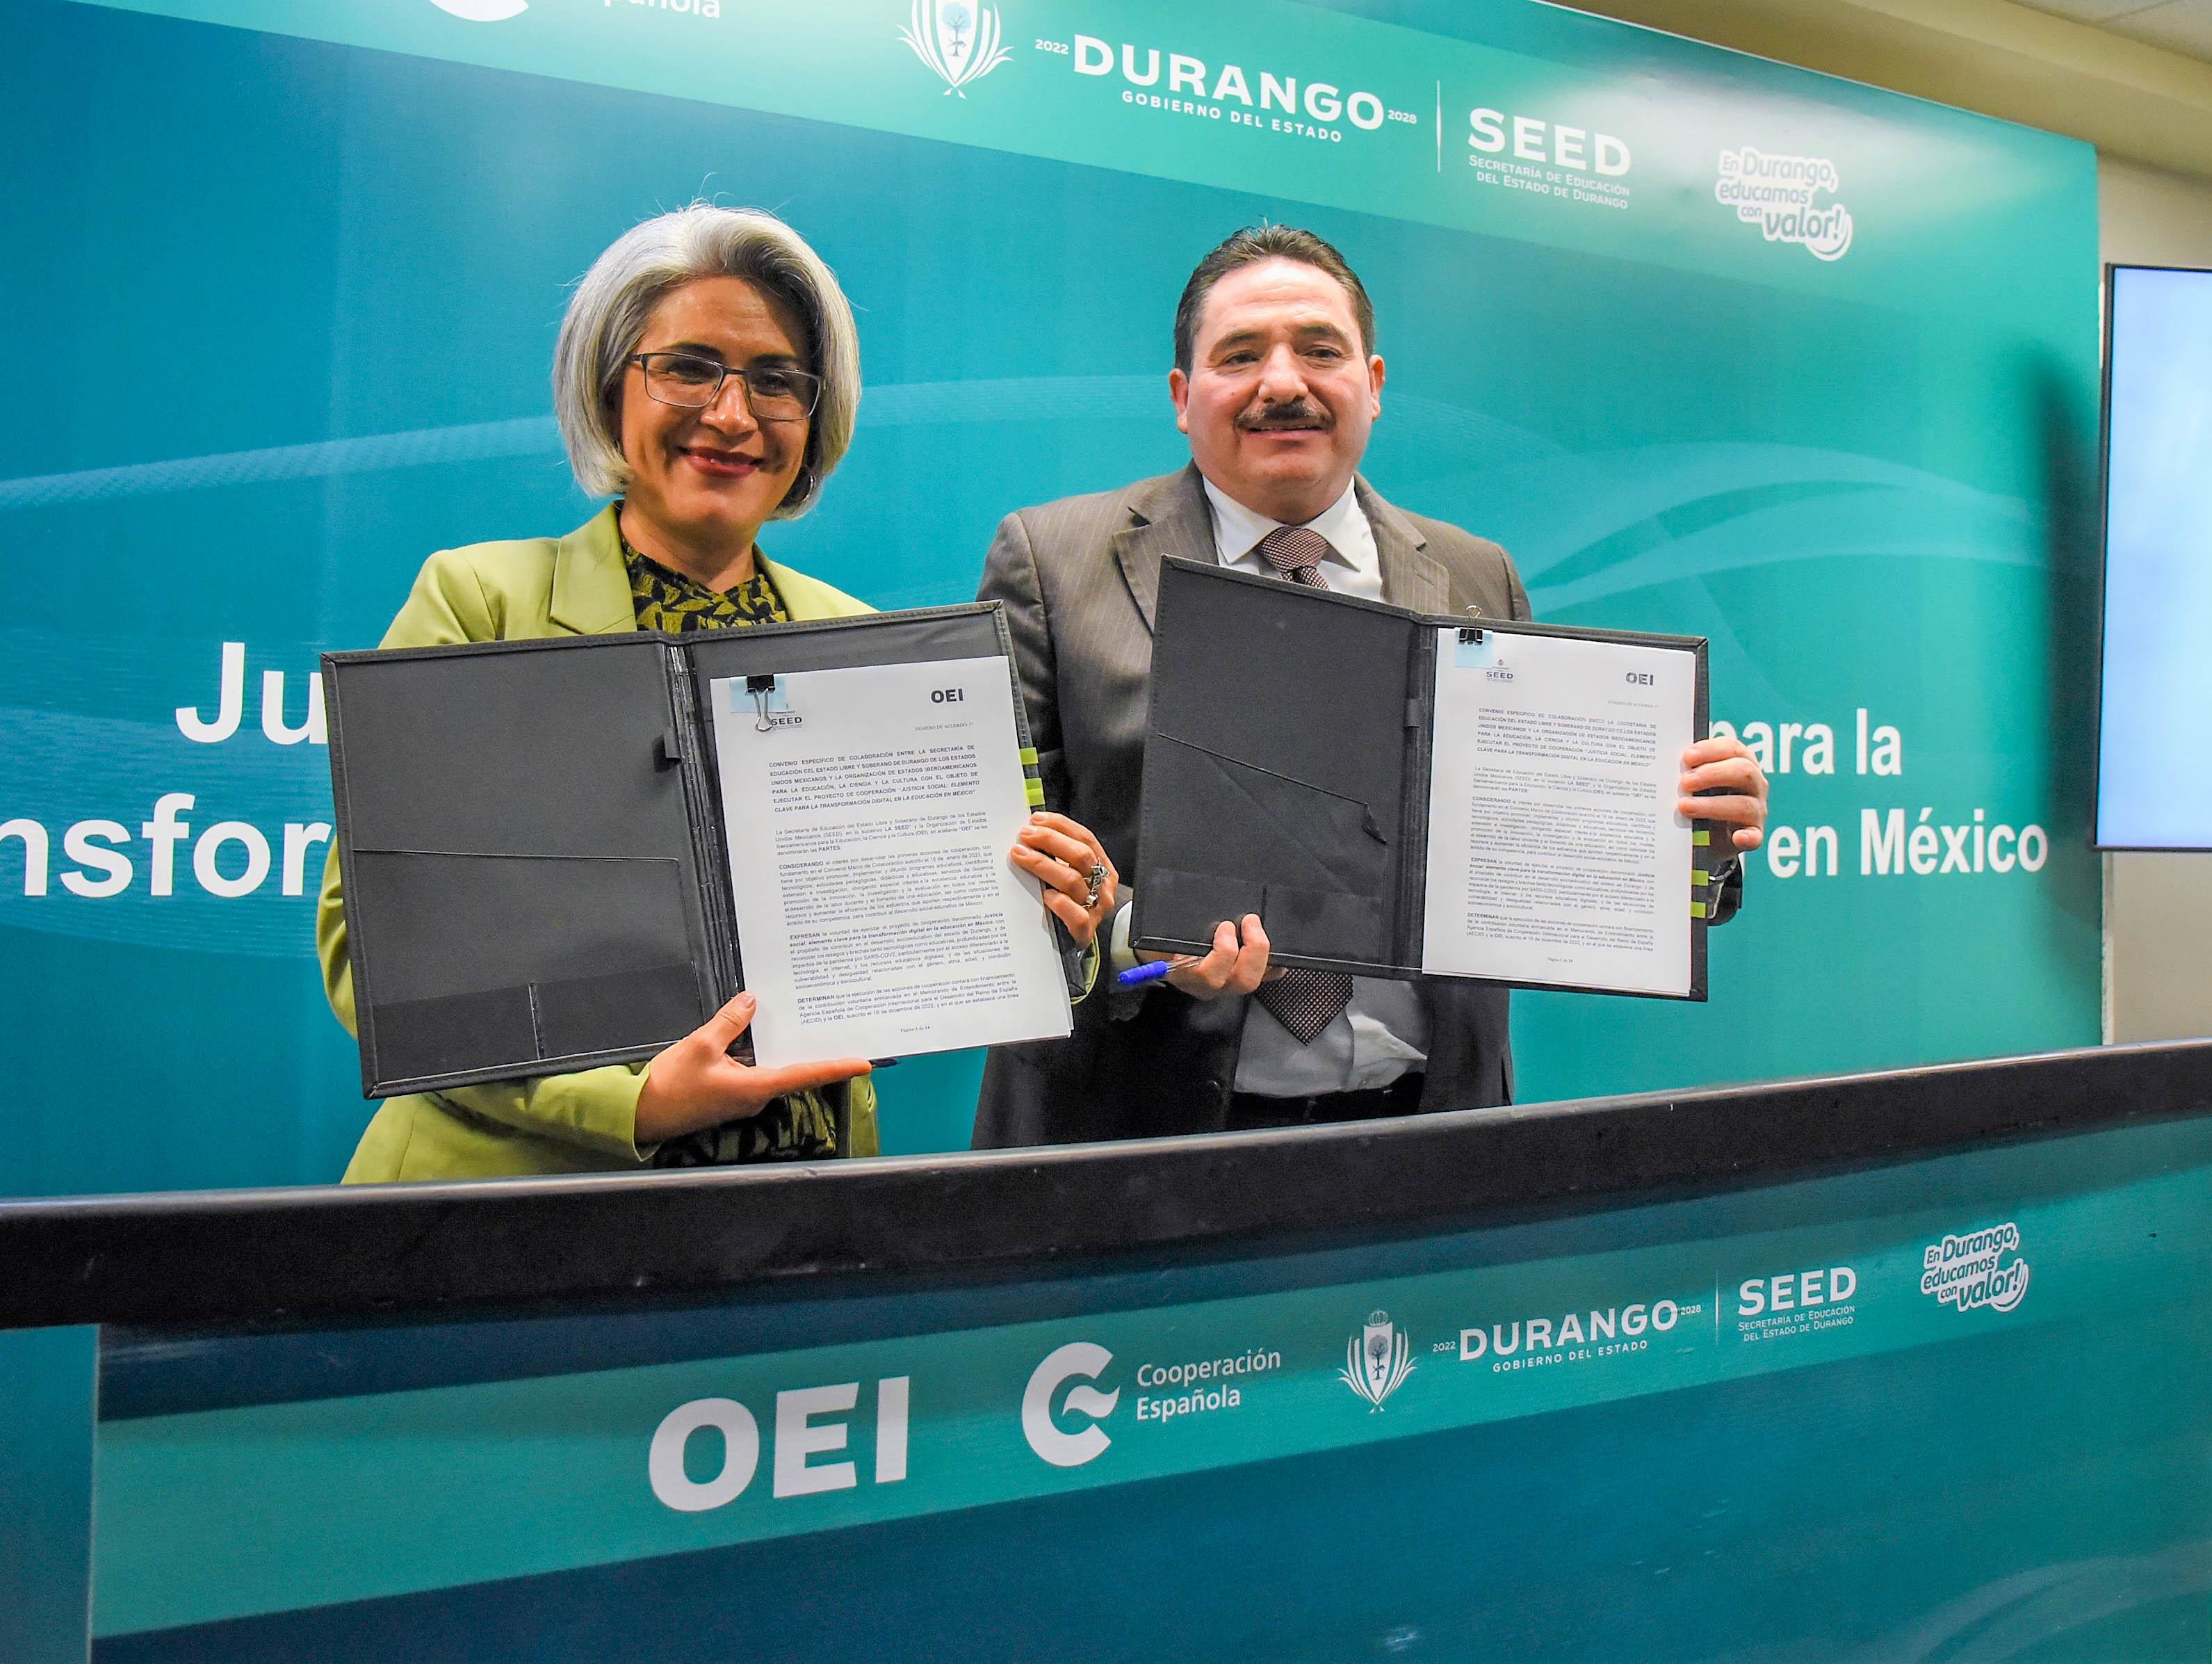 La OEI en México y la Secretaría de Educación de Durango arrancan proyecto en favor de la justicia social a través de la educación  